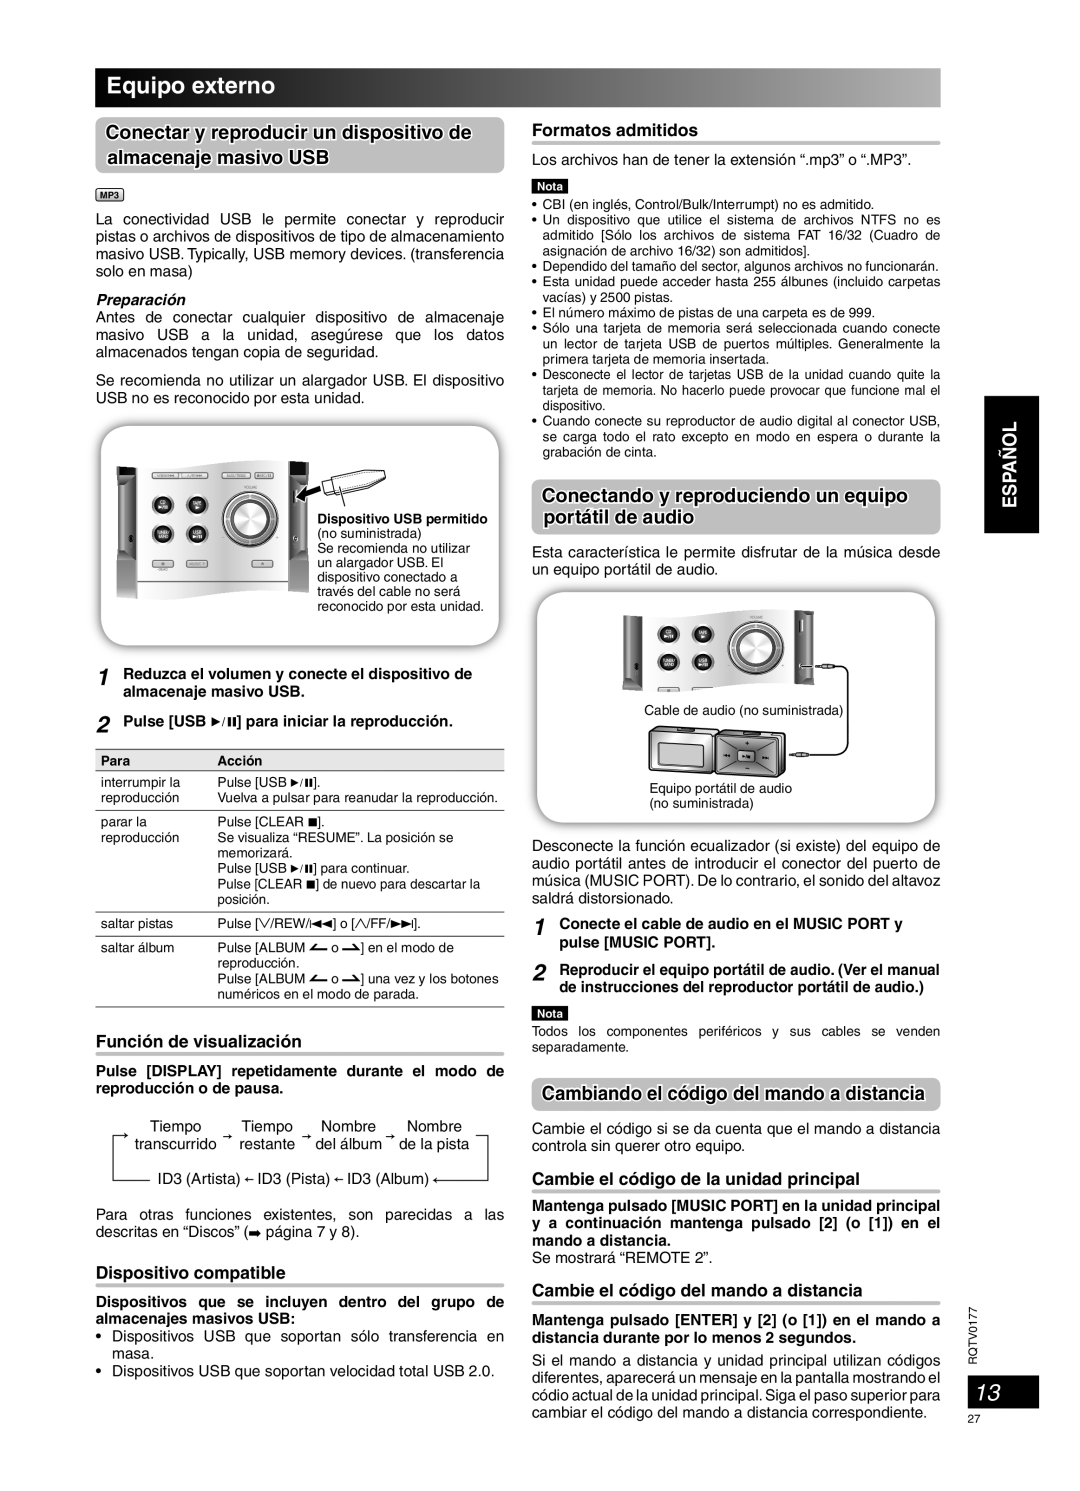 Panasonic SC-PM45 manual Equipo externo, Conectando y reproduciendo un equipo, portátil de audio, Dispositivo compatible 